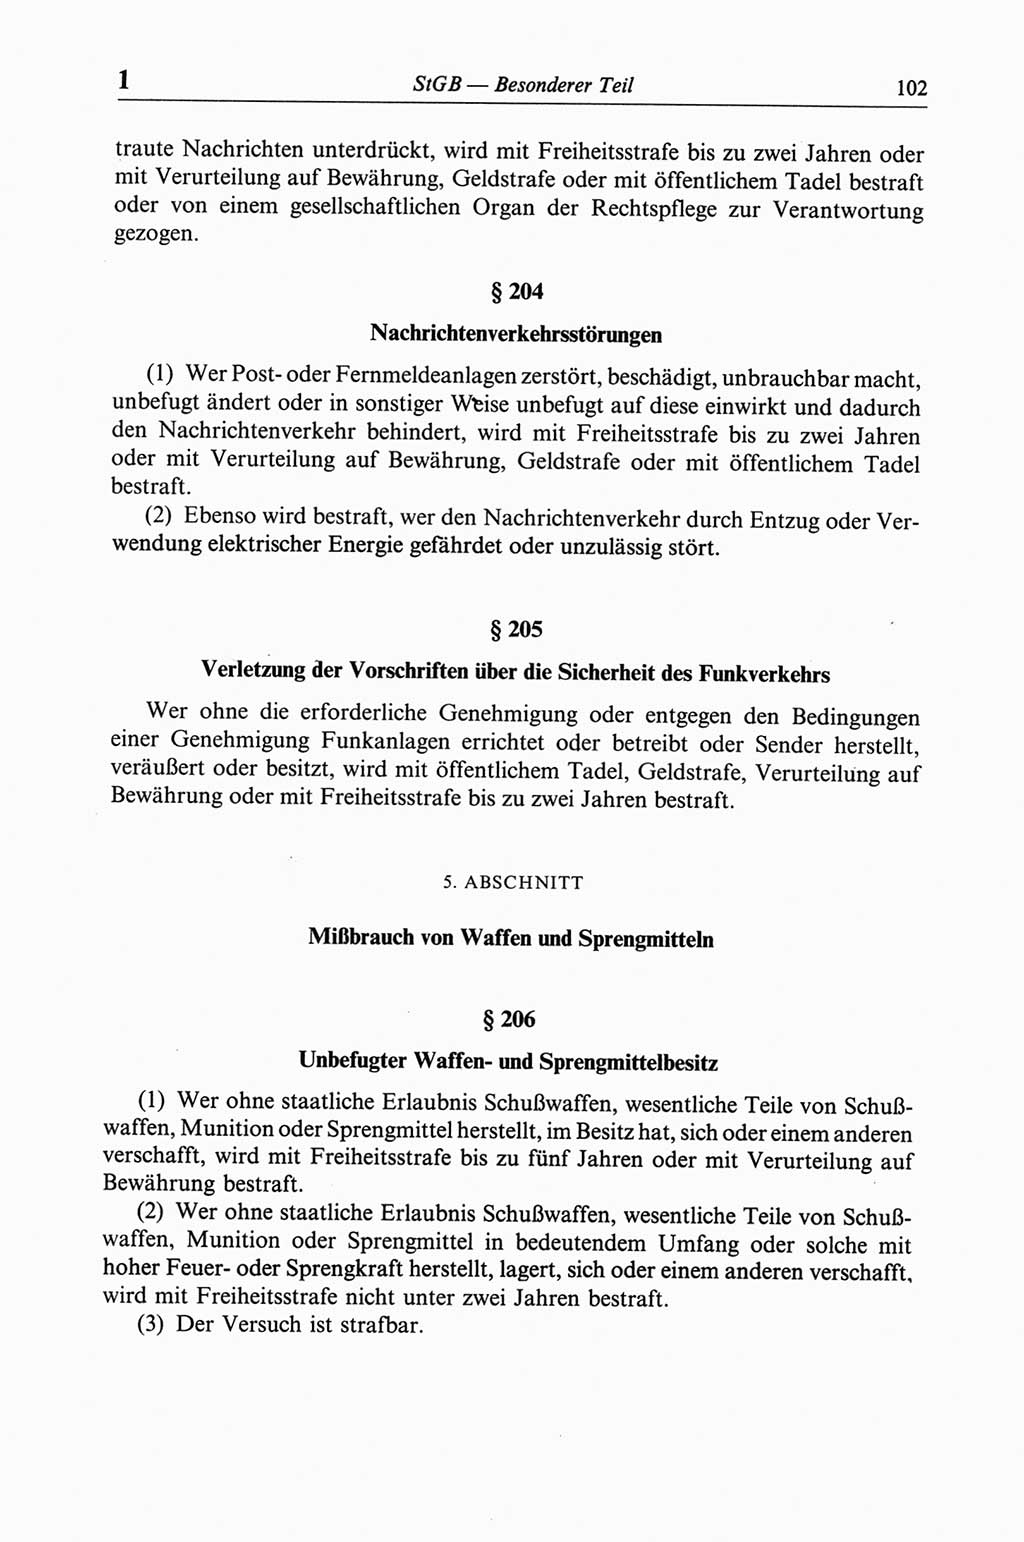 Strafgesetzbuch (StGB) der Deutschen Demokratischen Republik (DDR) und angrenzende Gesetze und Bestimmungen 1968, Seite 102 (StGB Ges. Best. DDR 1968, S. 102)